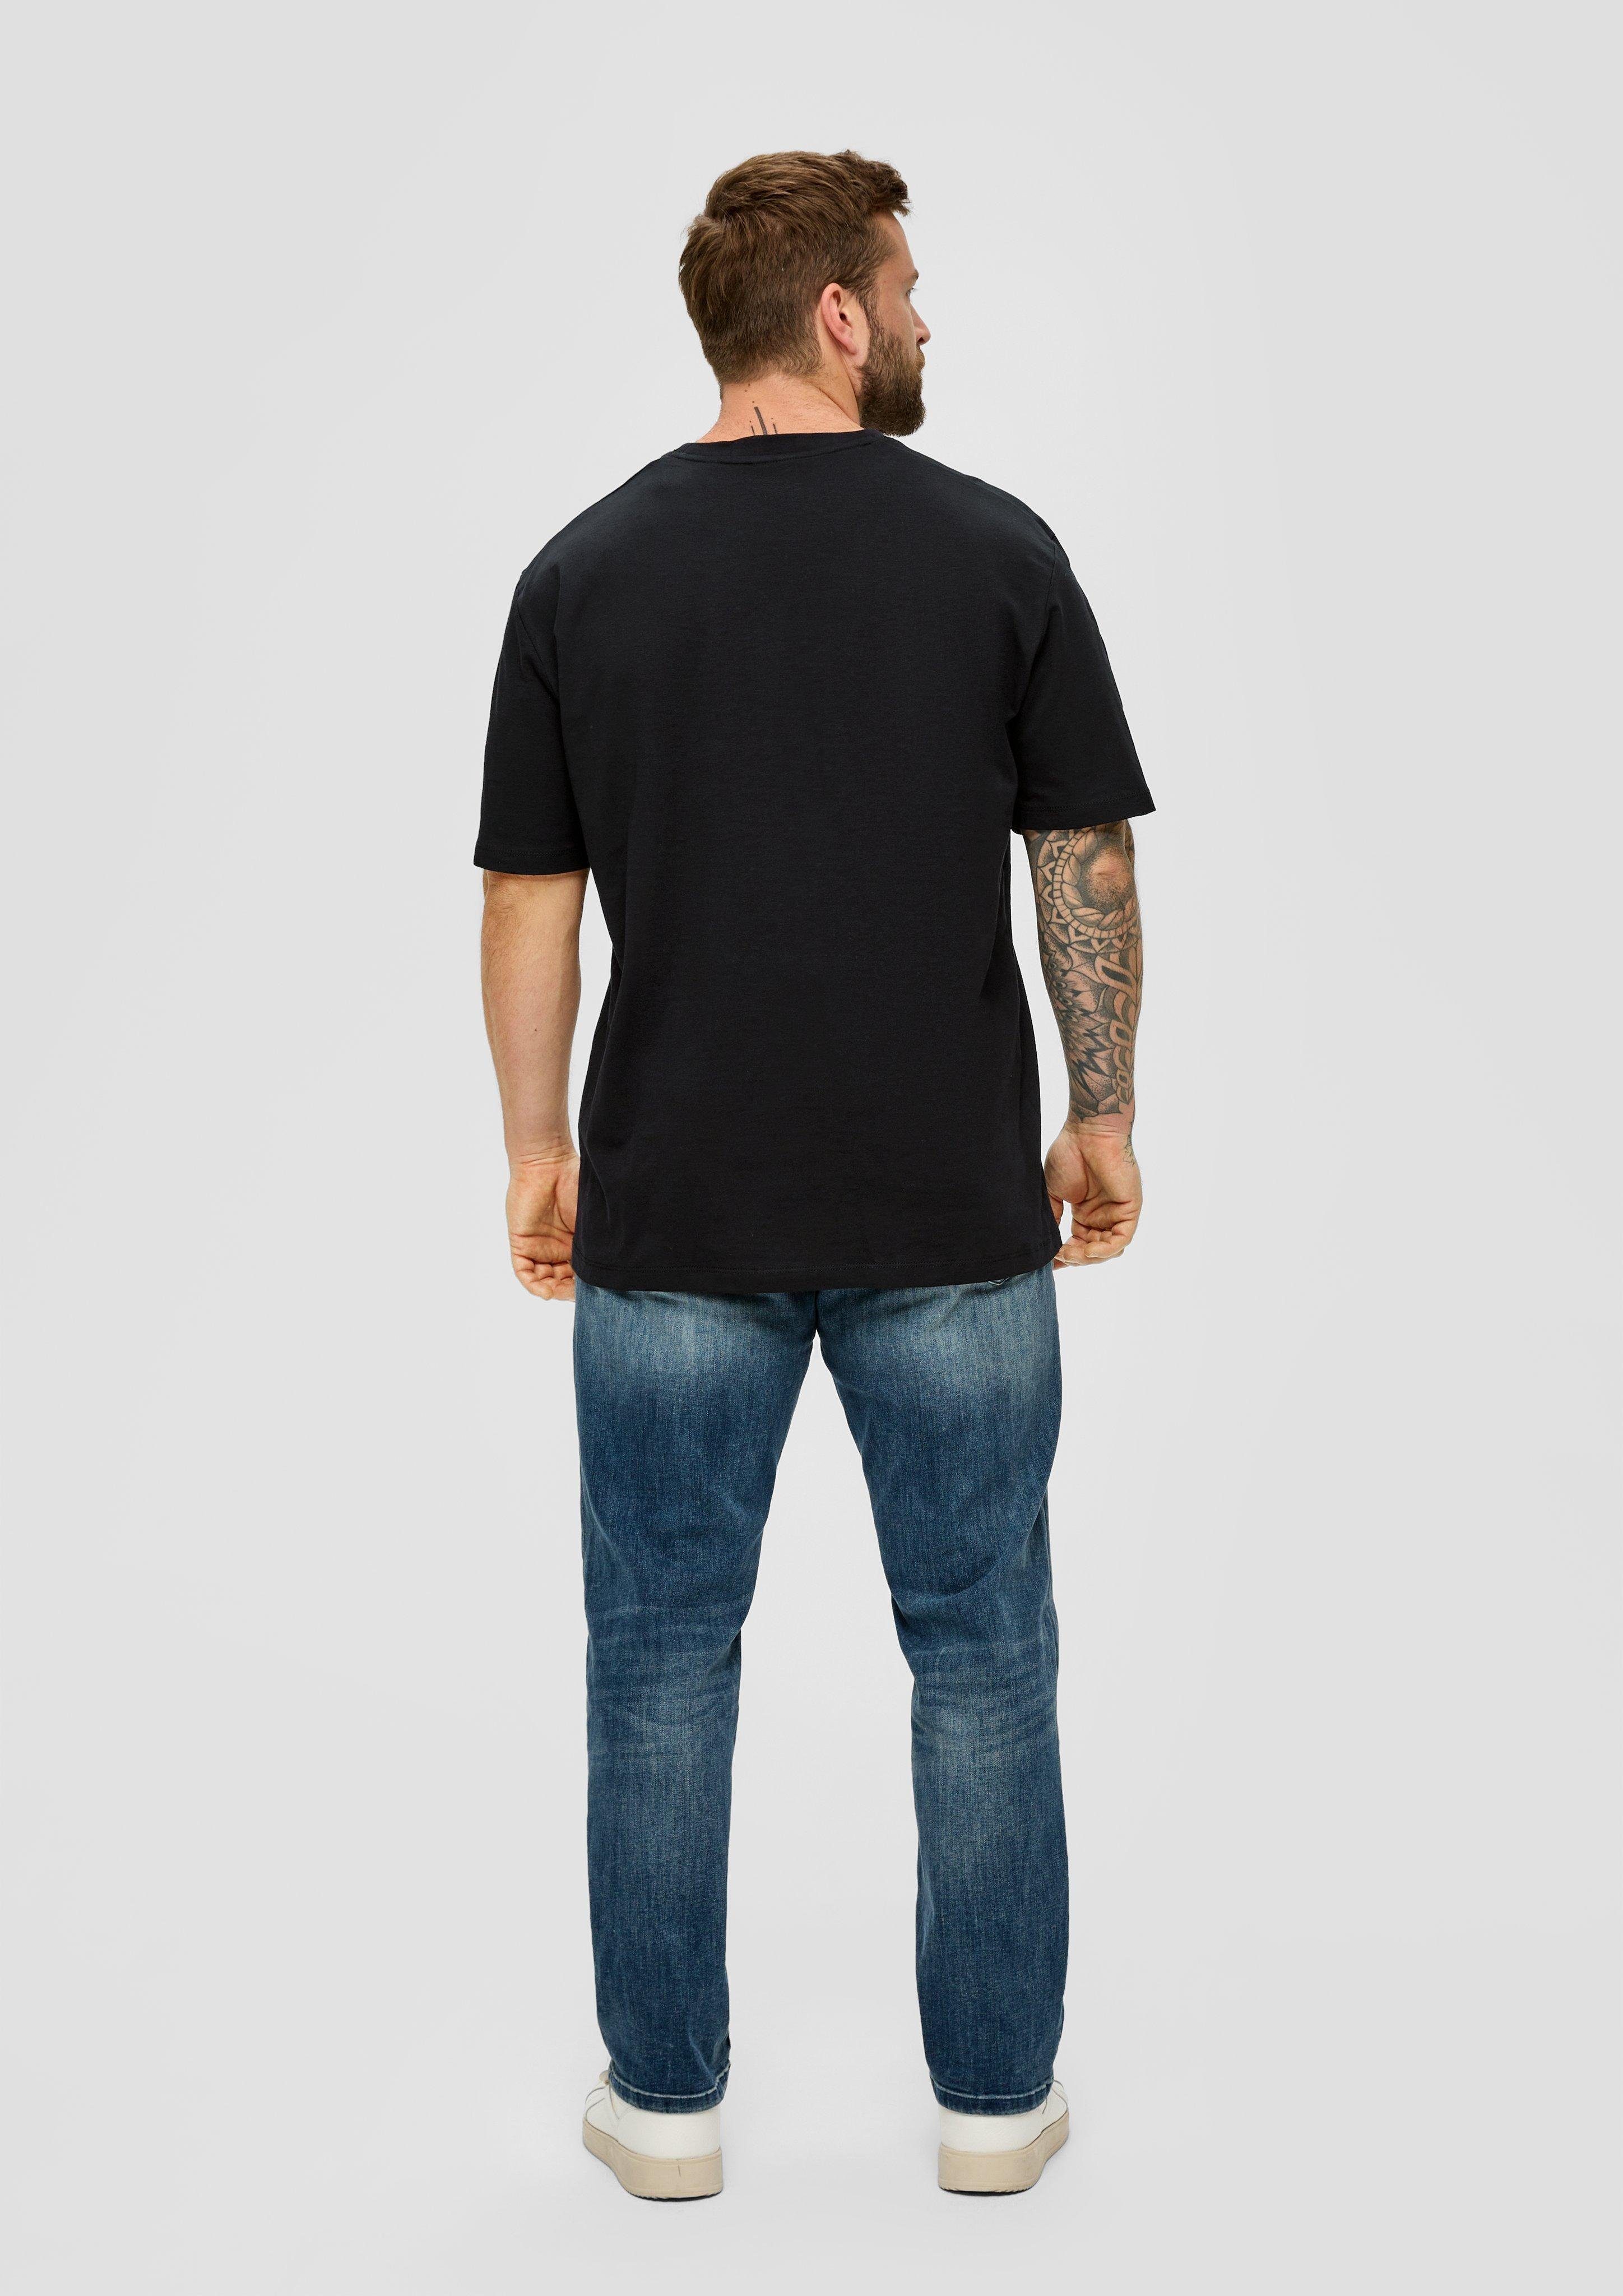 s.Oliver mit Flammgarnstruktur Baumwollshirt schwarz Kurzarmshirt